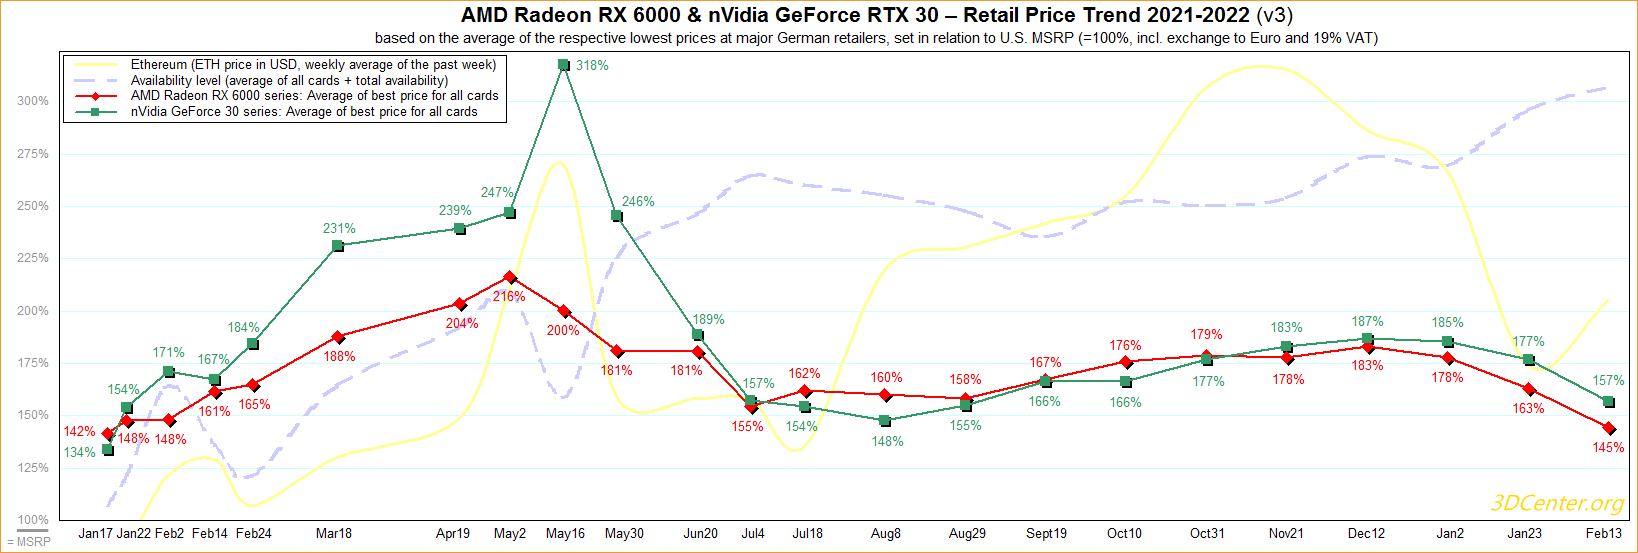 Цена на видеокарты в Европе продолжают снижаться – вплоть до минимальных значений за последние 13 месяцев на линейку AMD Radeon RX 6000